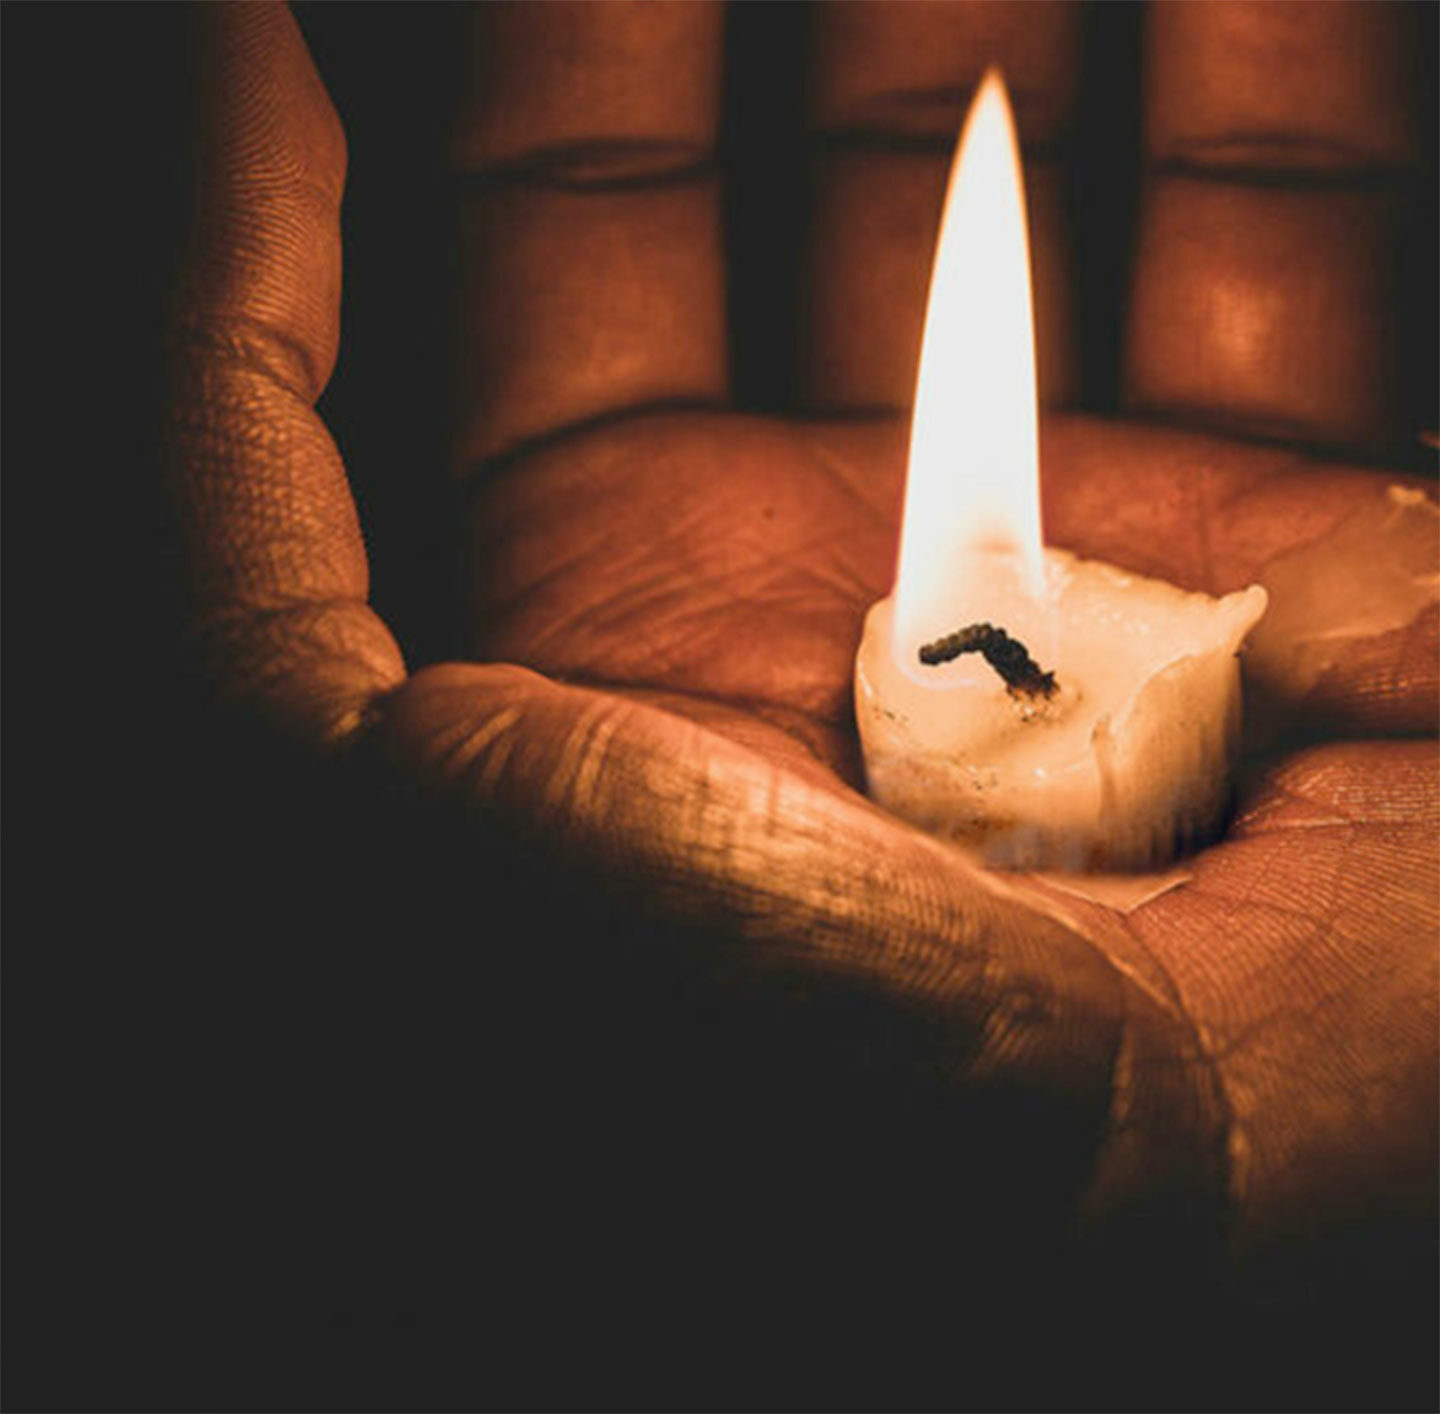 Eine Kerze brennt in einer Hand